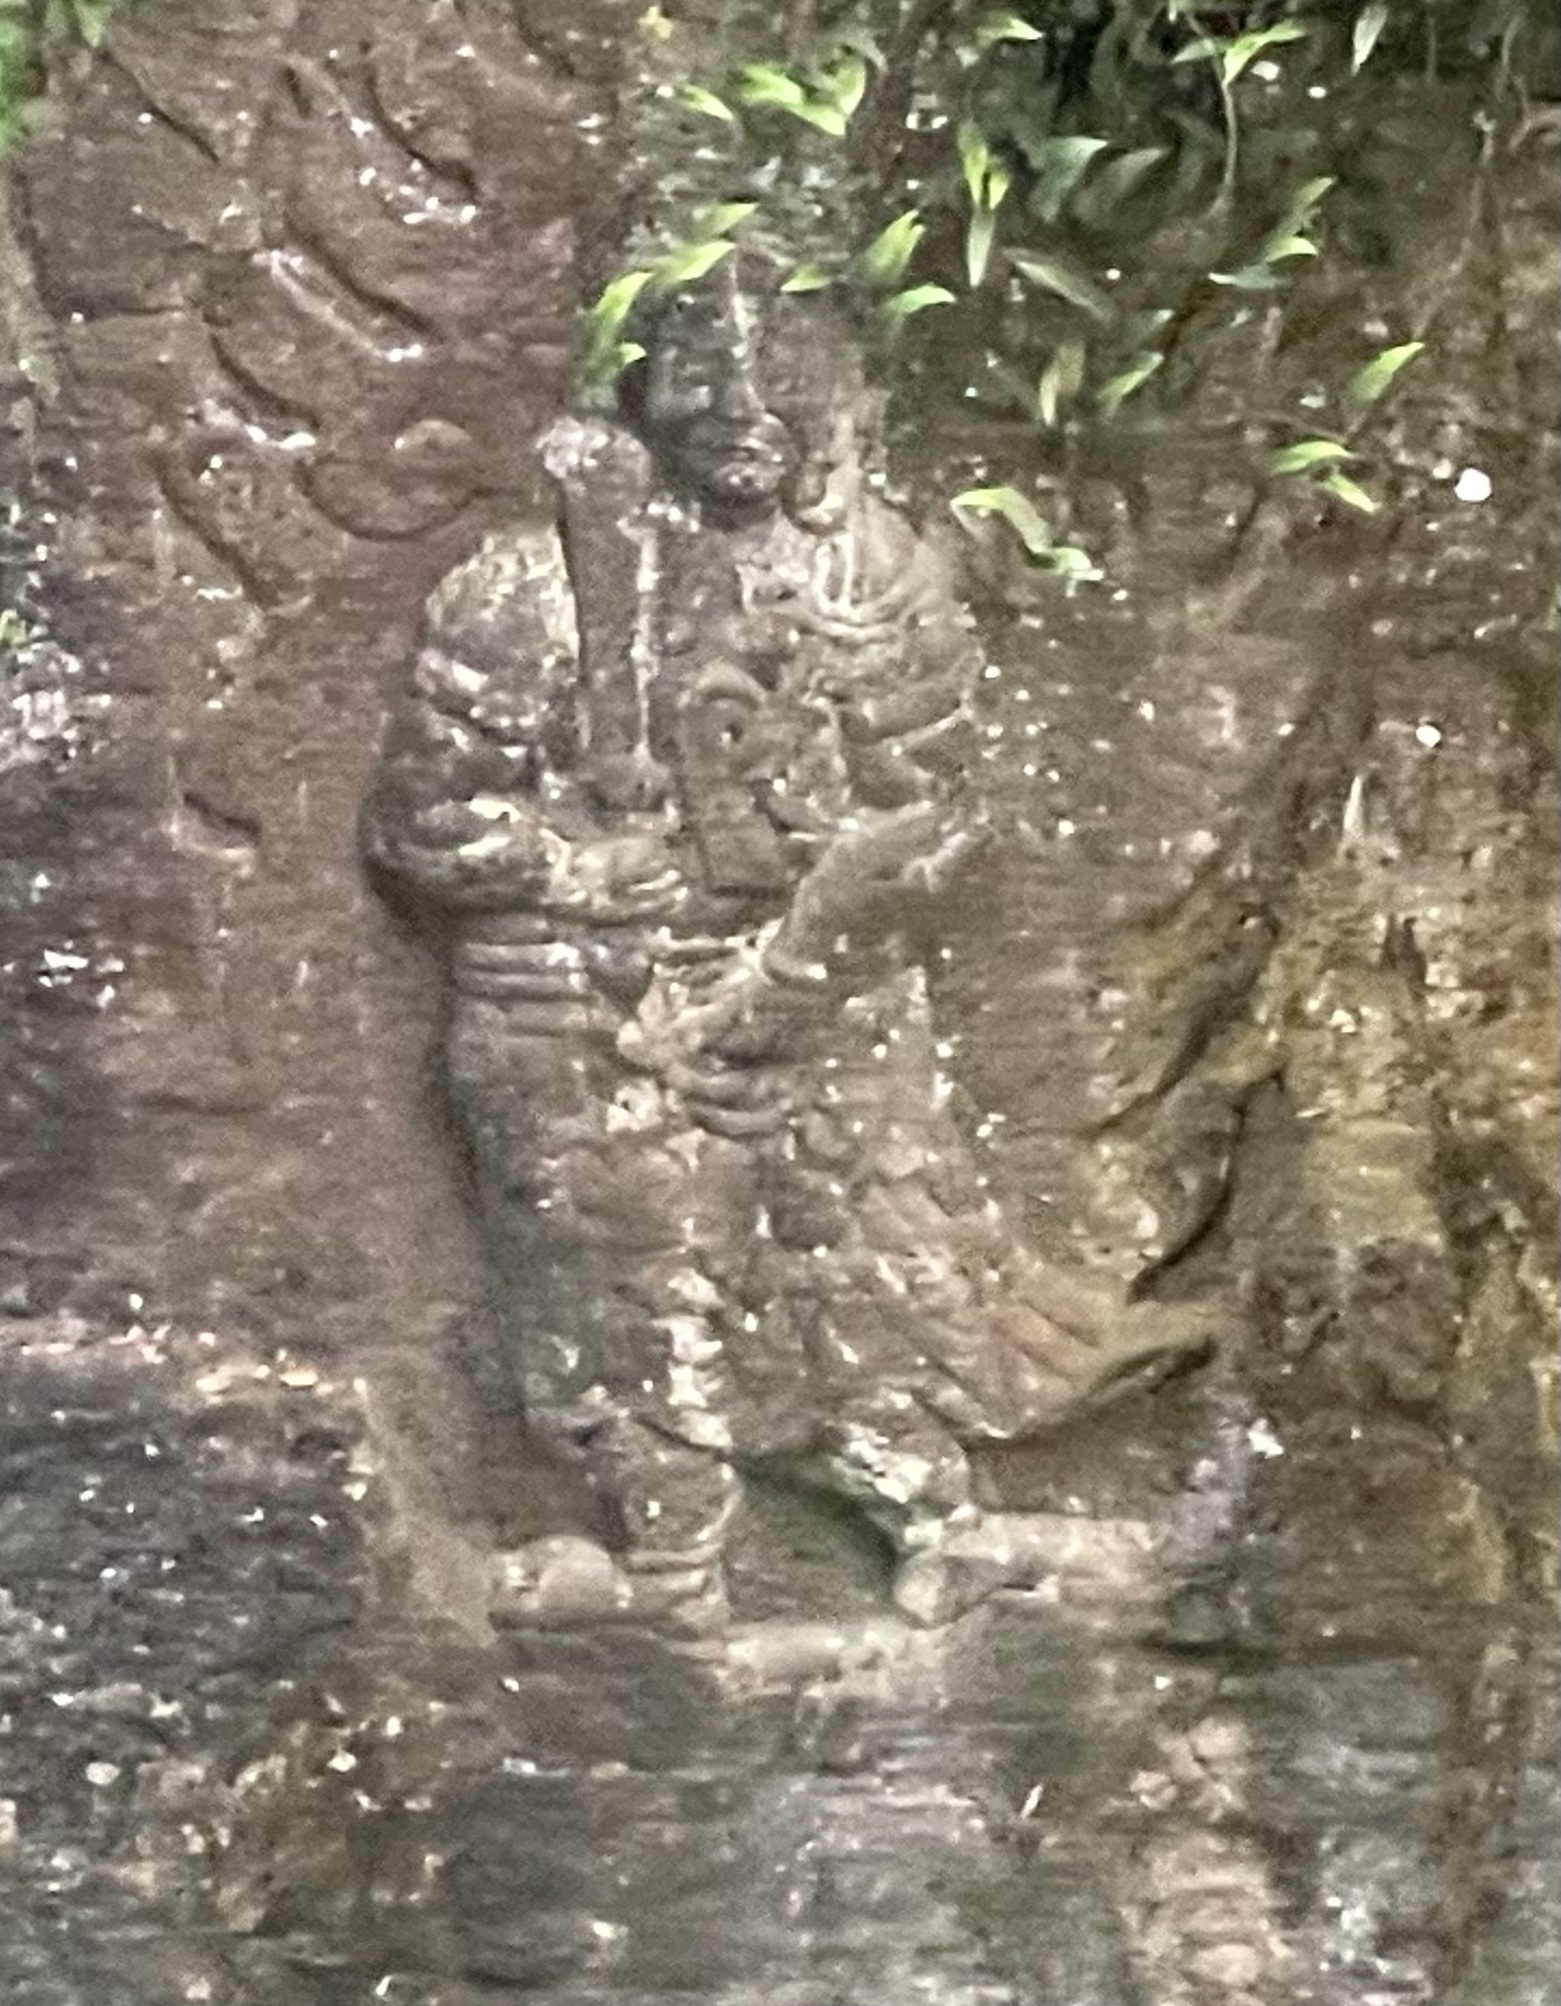 『摩崖不動明王』〔国宝〕太山寺付近、岩から浮かび上がったかのようなクッキリとした磨崖仏